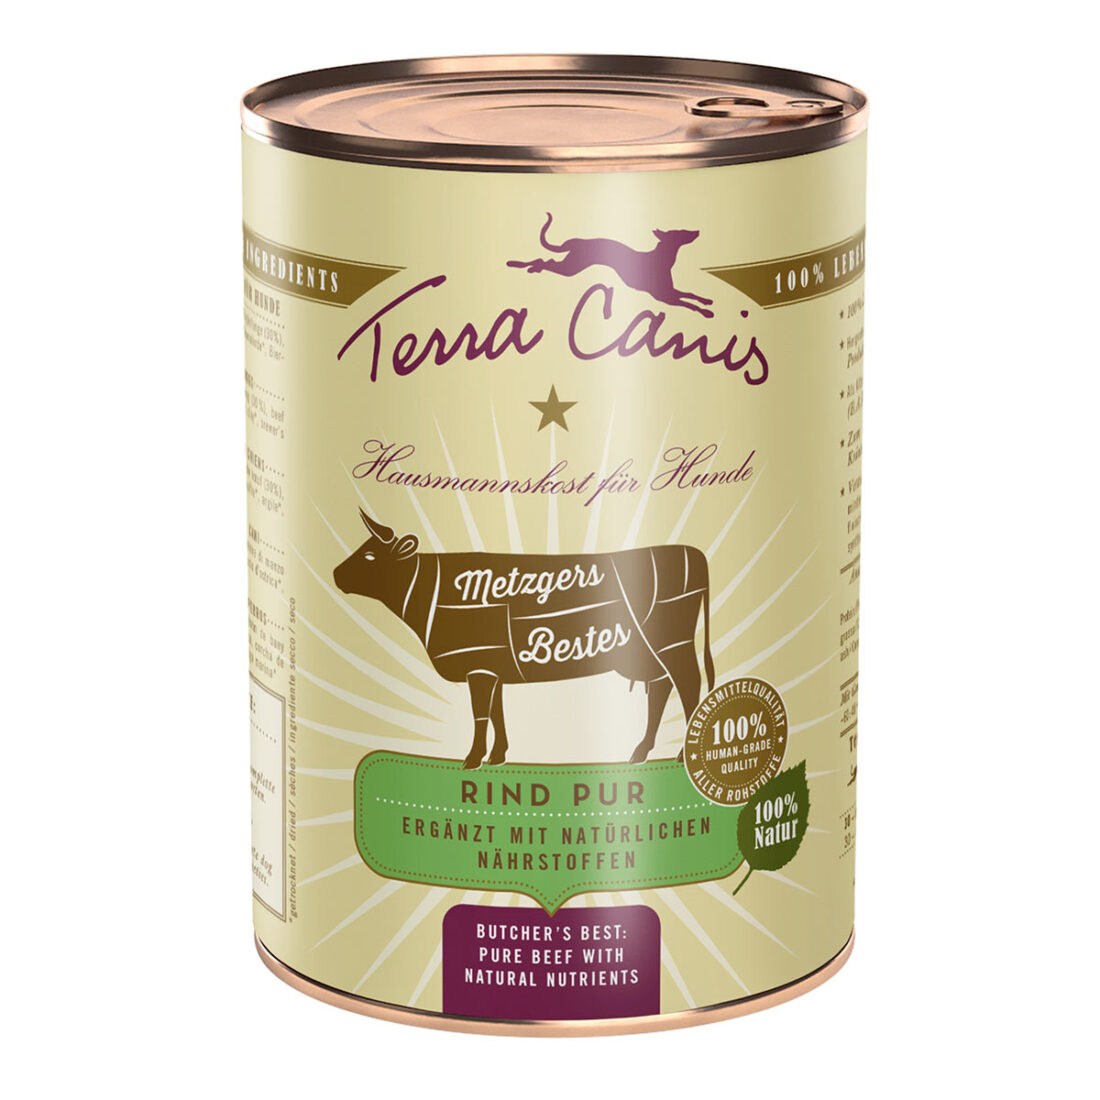 Terra Canis čisté hovězí maso